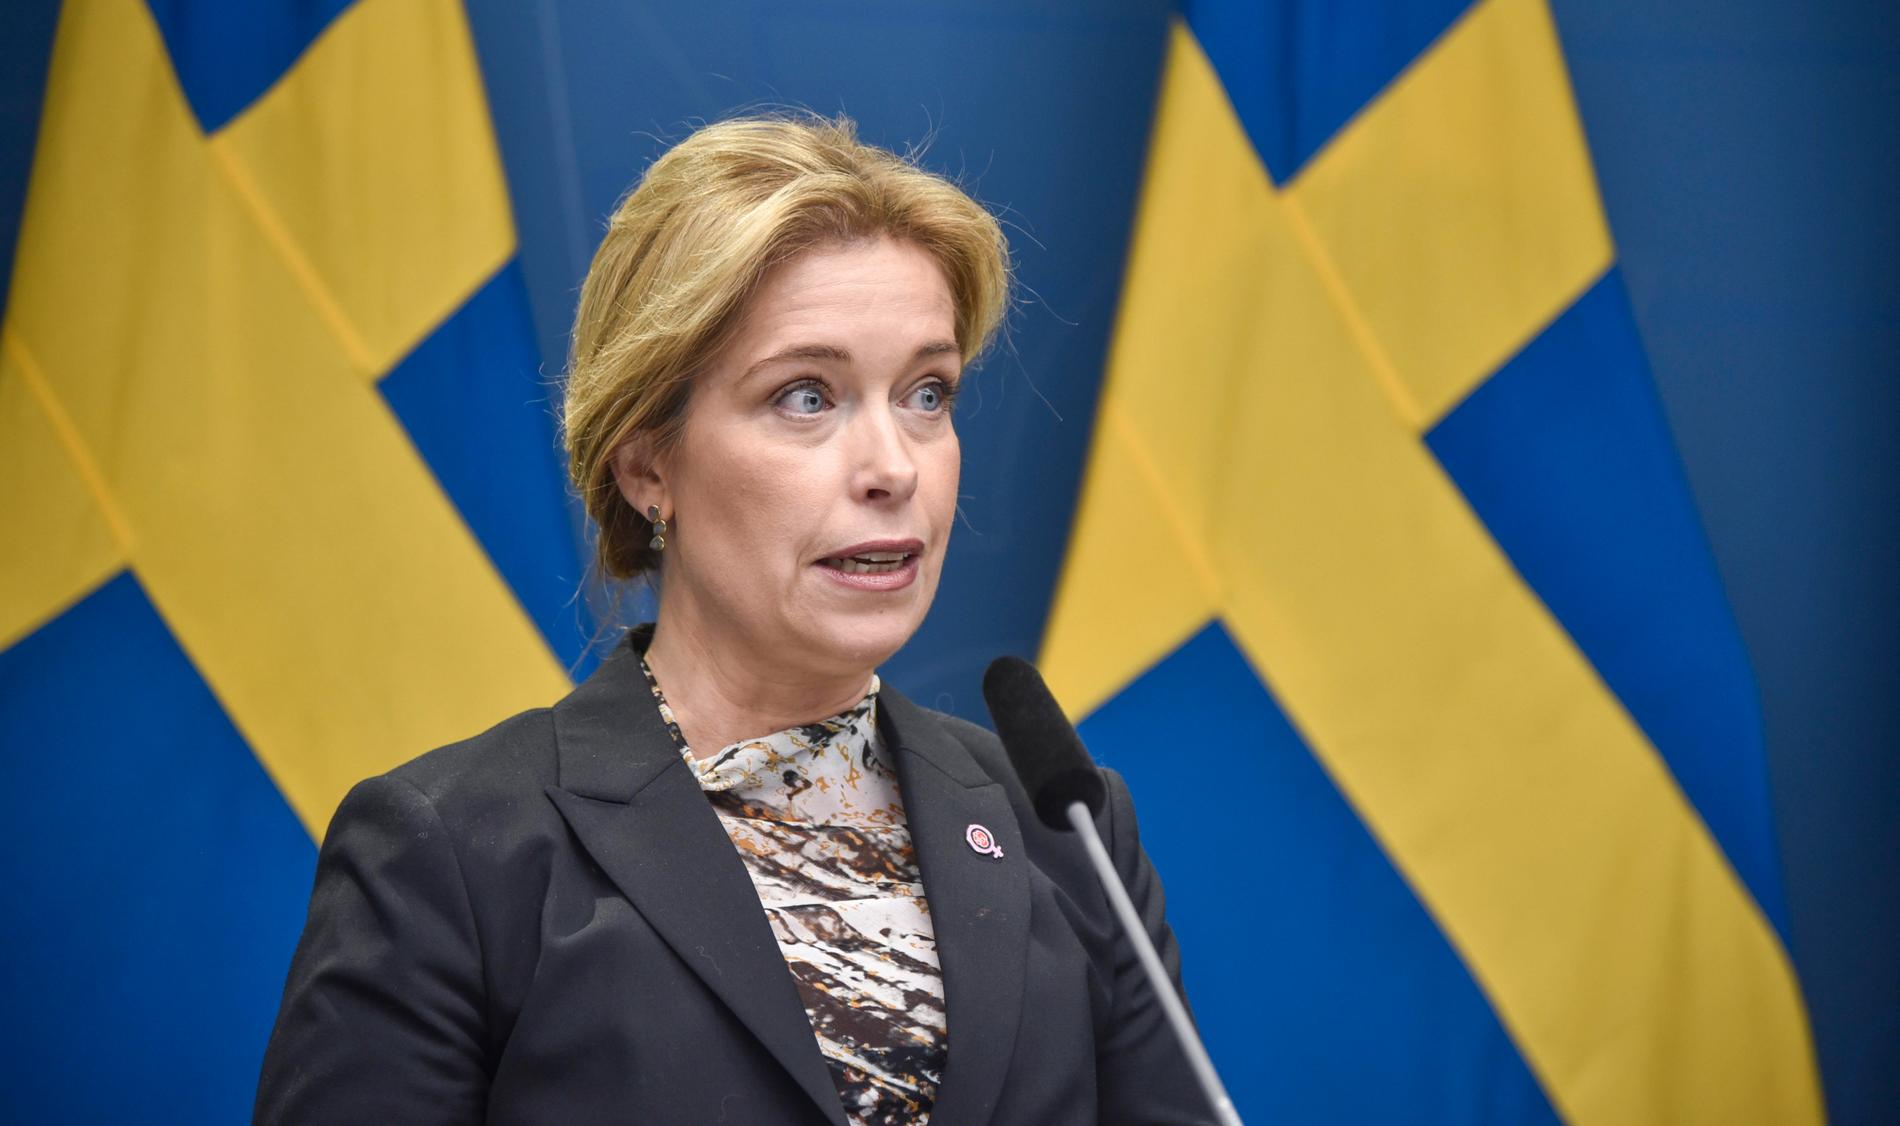 Miljöminister Annika Strandhäll har lovat besked om slutförvaret för kärnavfall den här veckan.